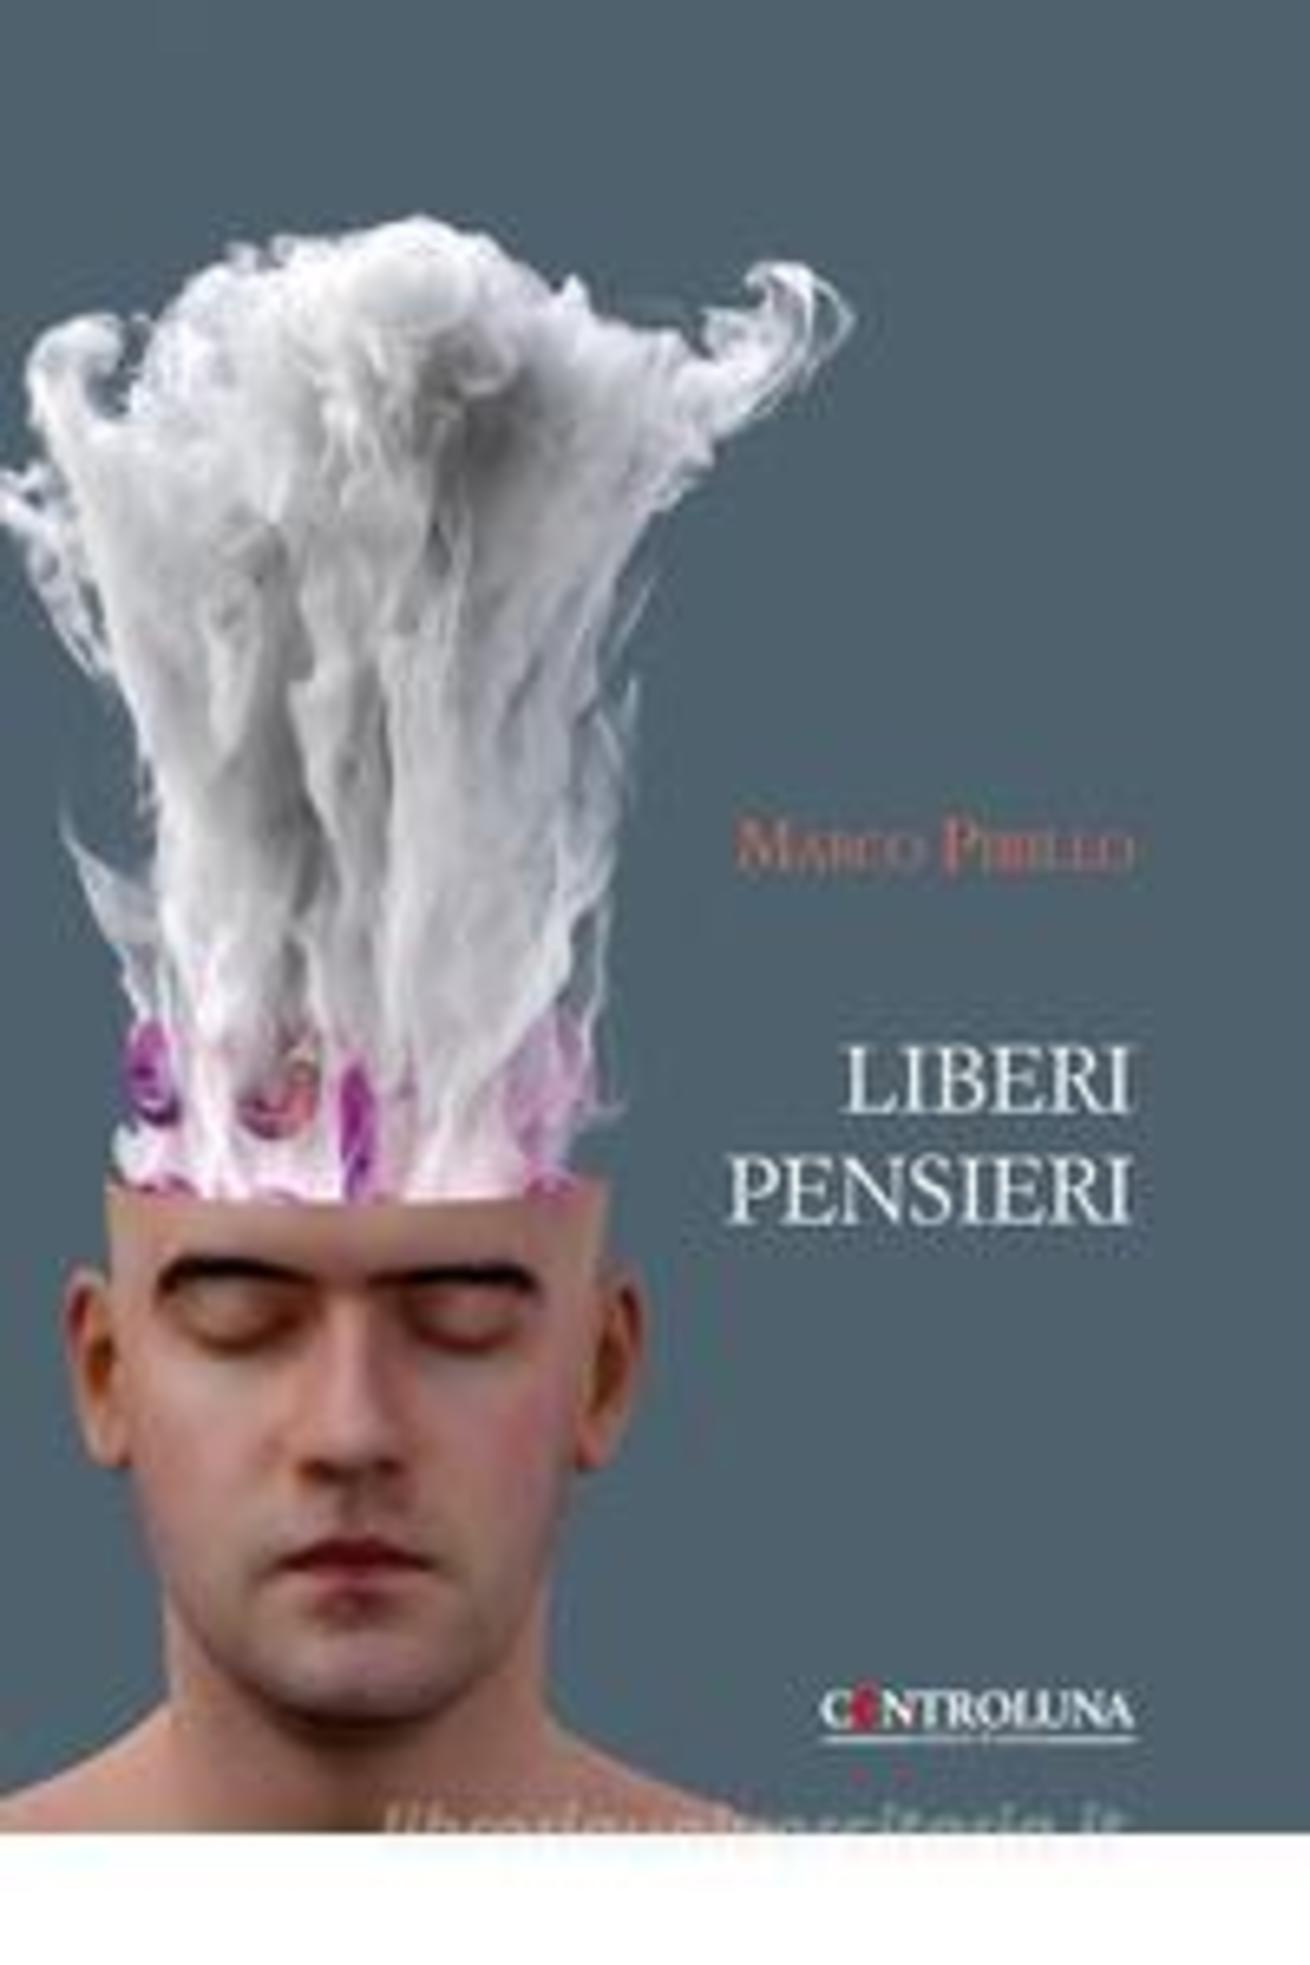 ‘Liberi Pensieri’ , la raccolta di poesie di Marco Pirillo per Controluna